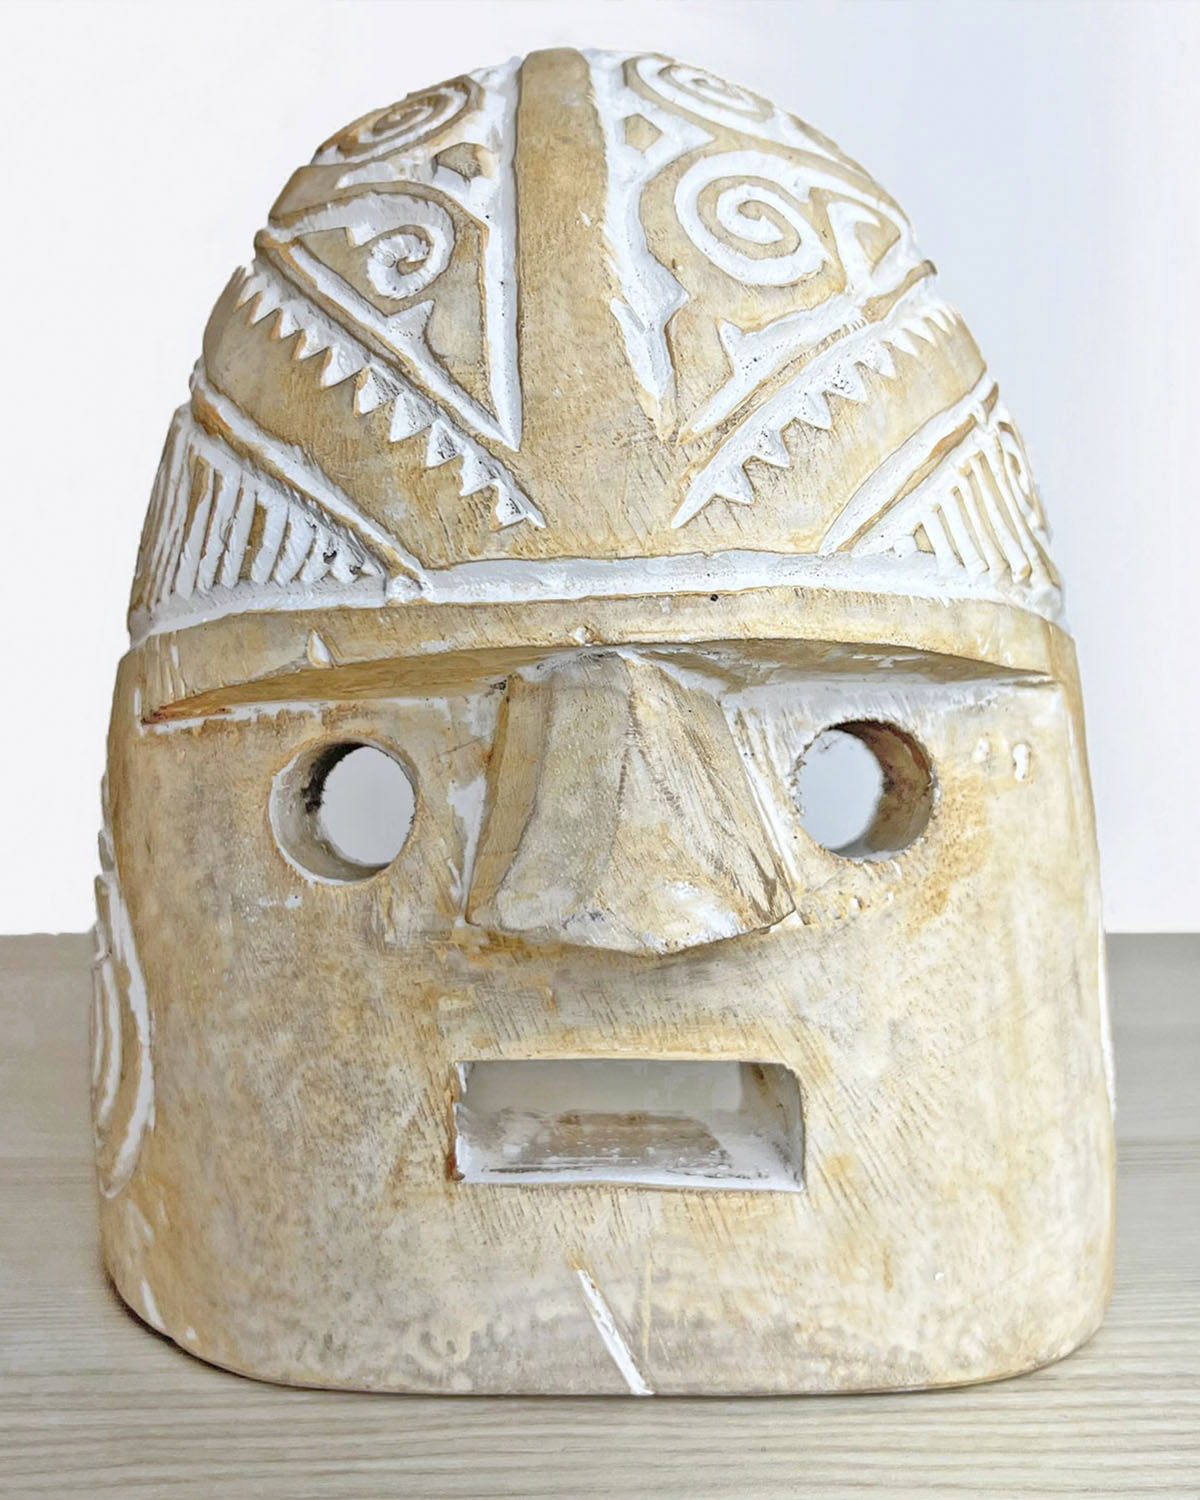 Papua mask